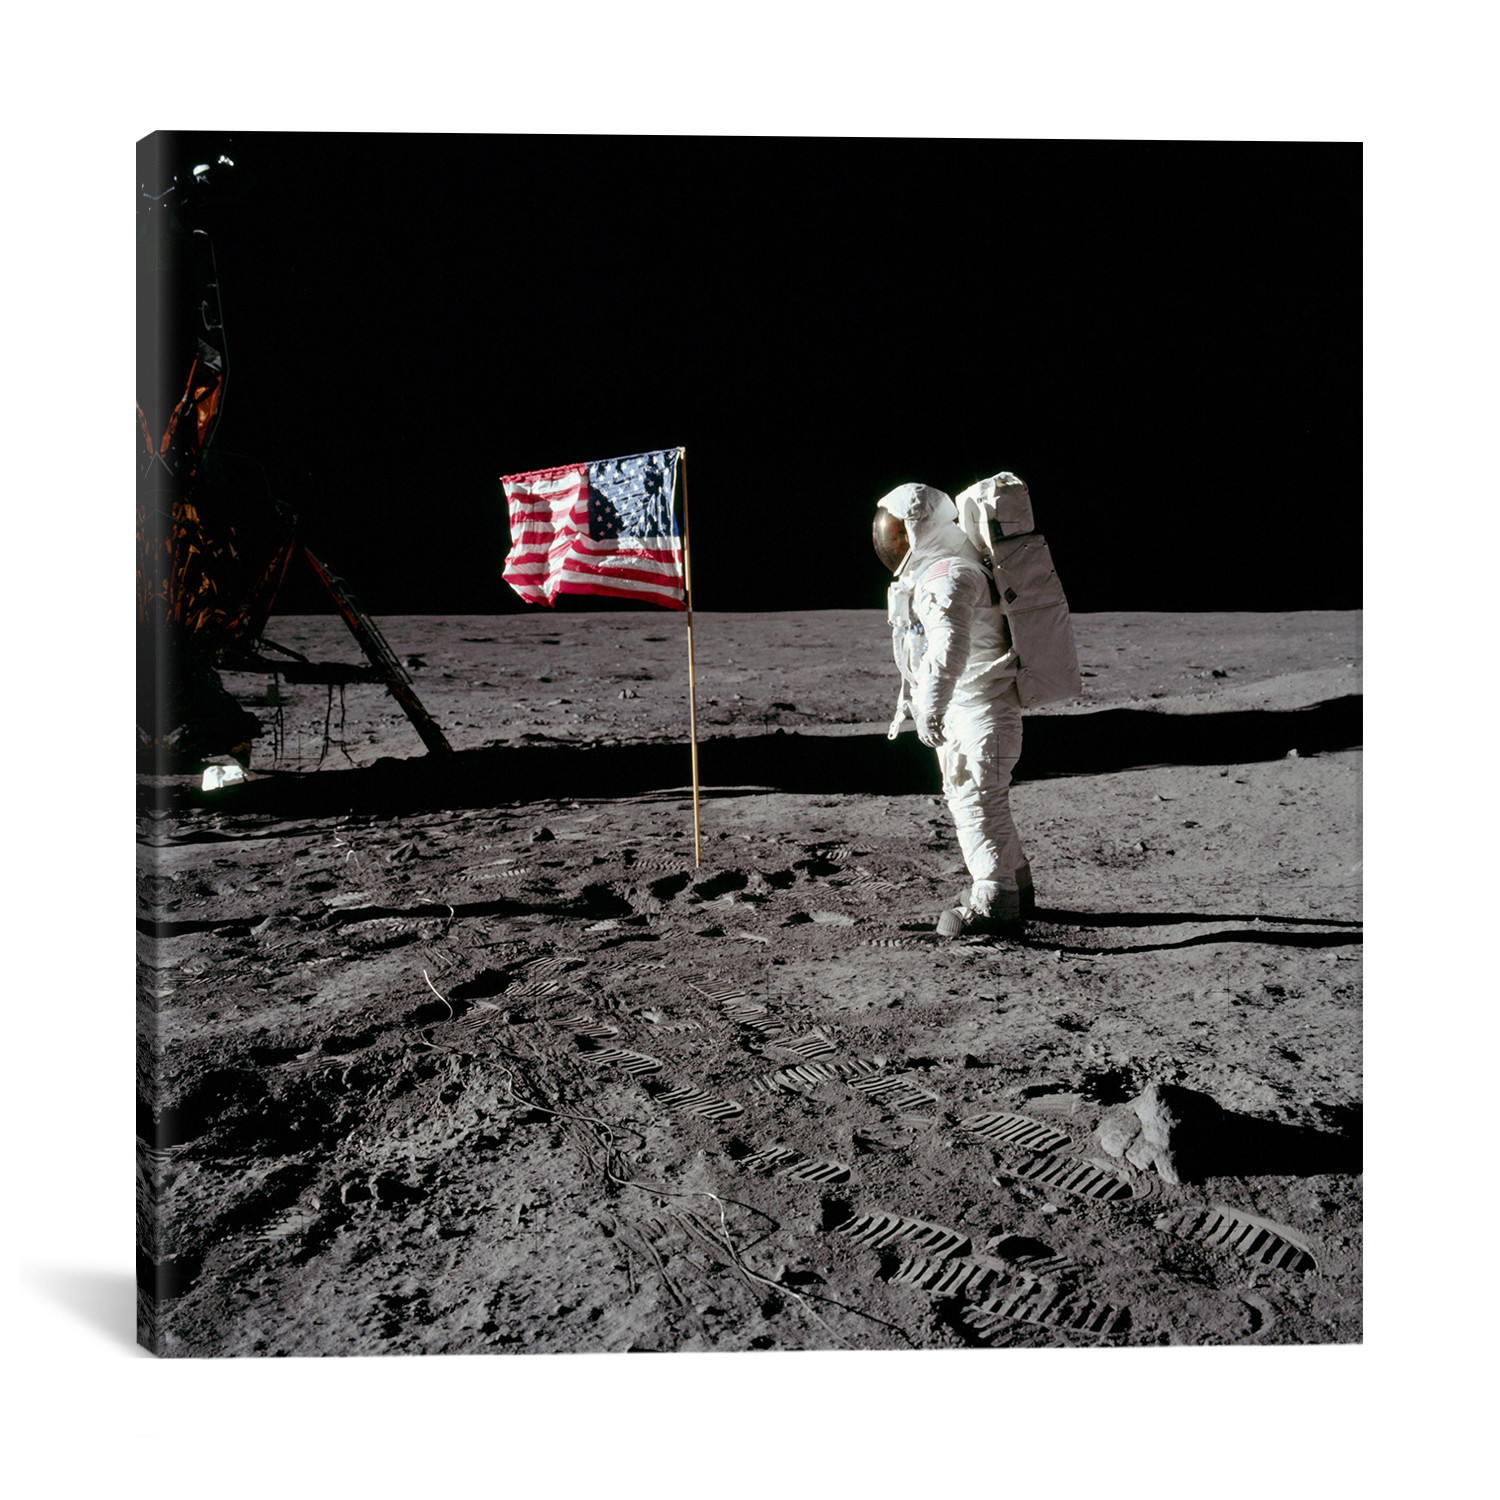 First land on the moon. Первая высадка на луну фото. Первый человек на Луне фото. Хлопок вырос на Луне. Почему американский флаг развевается на Луне.